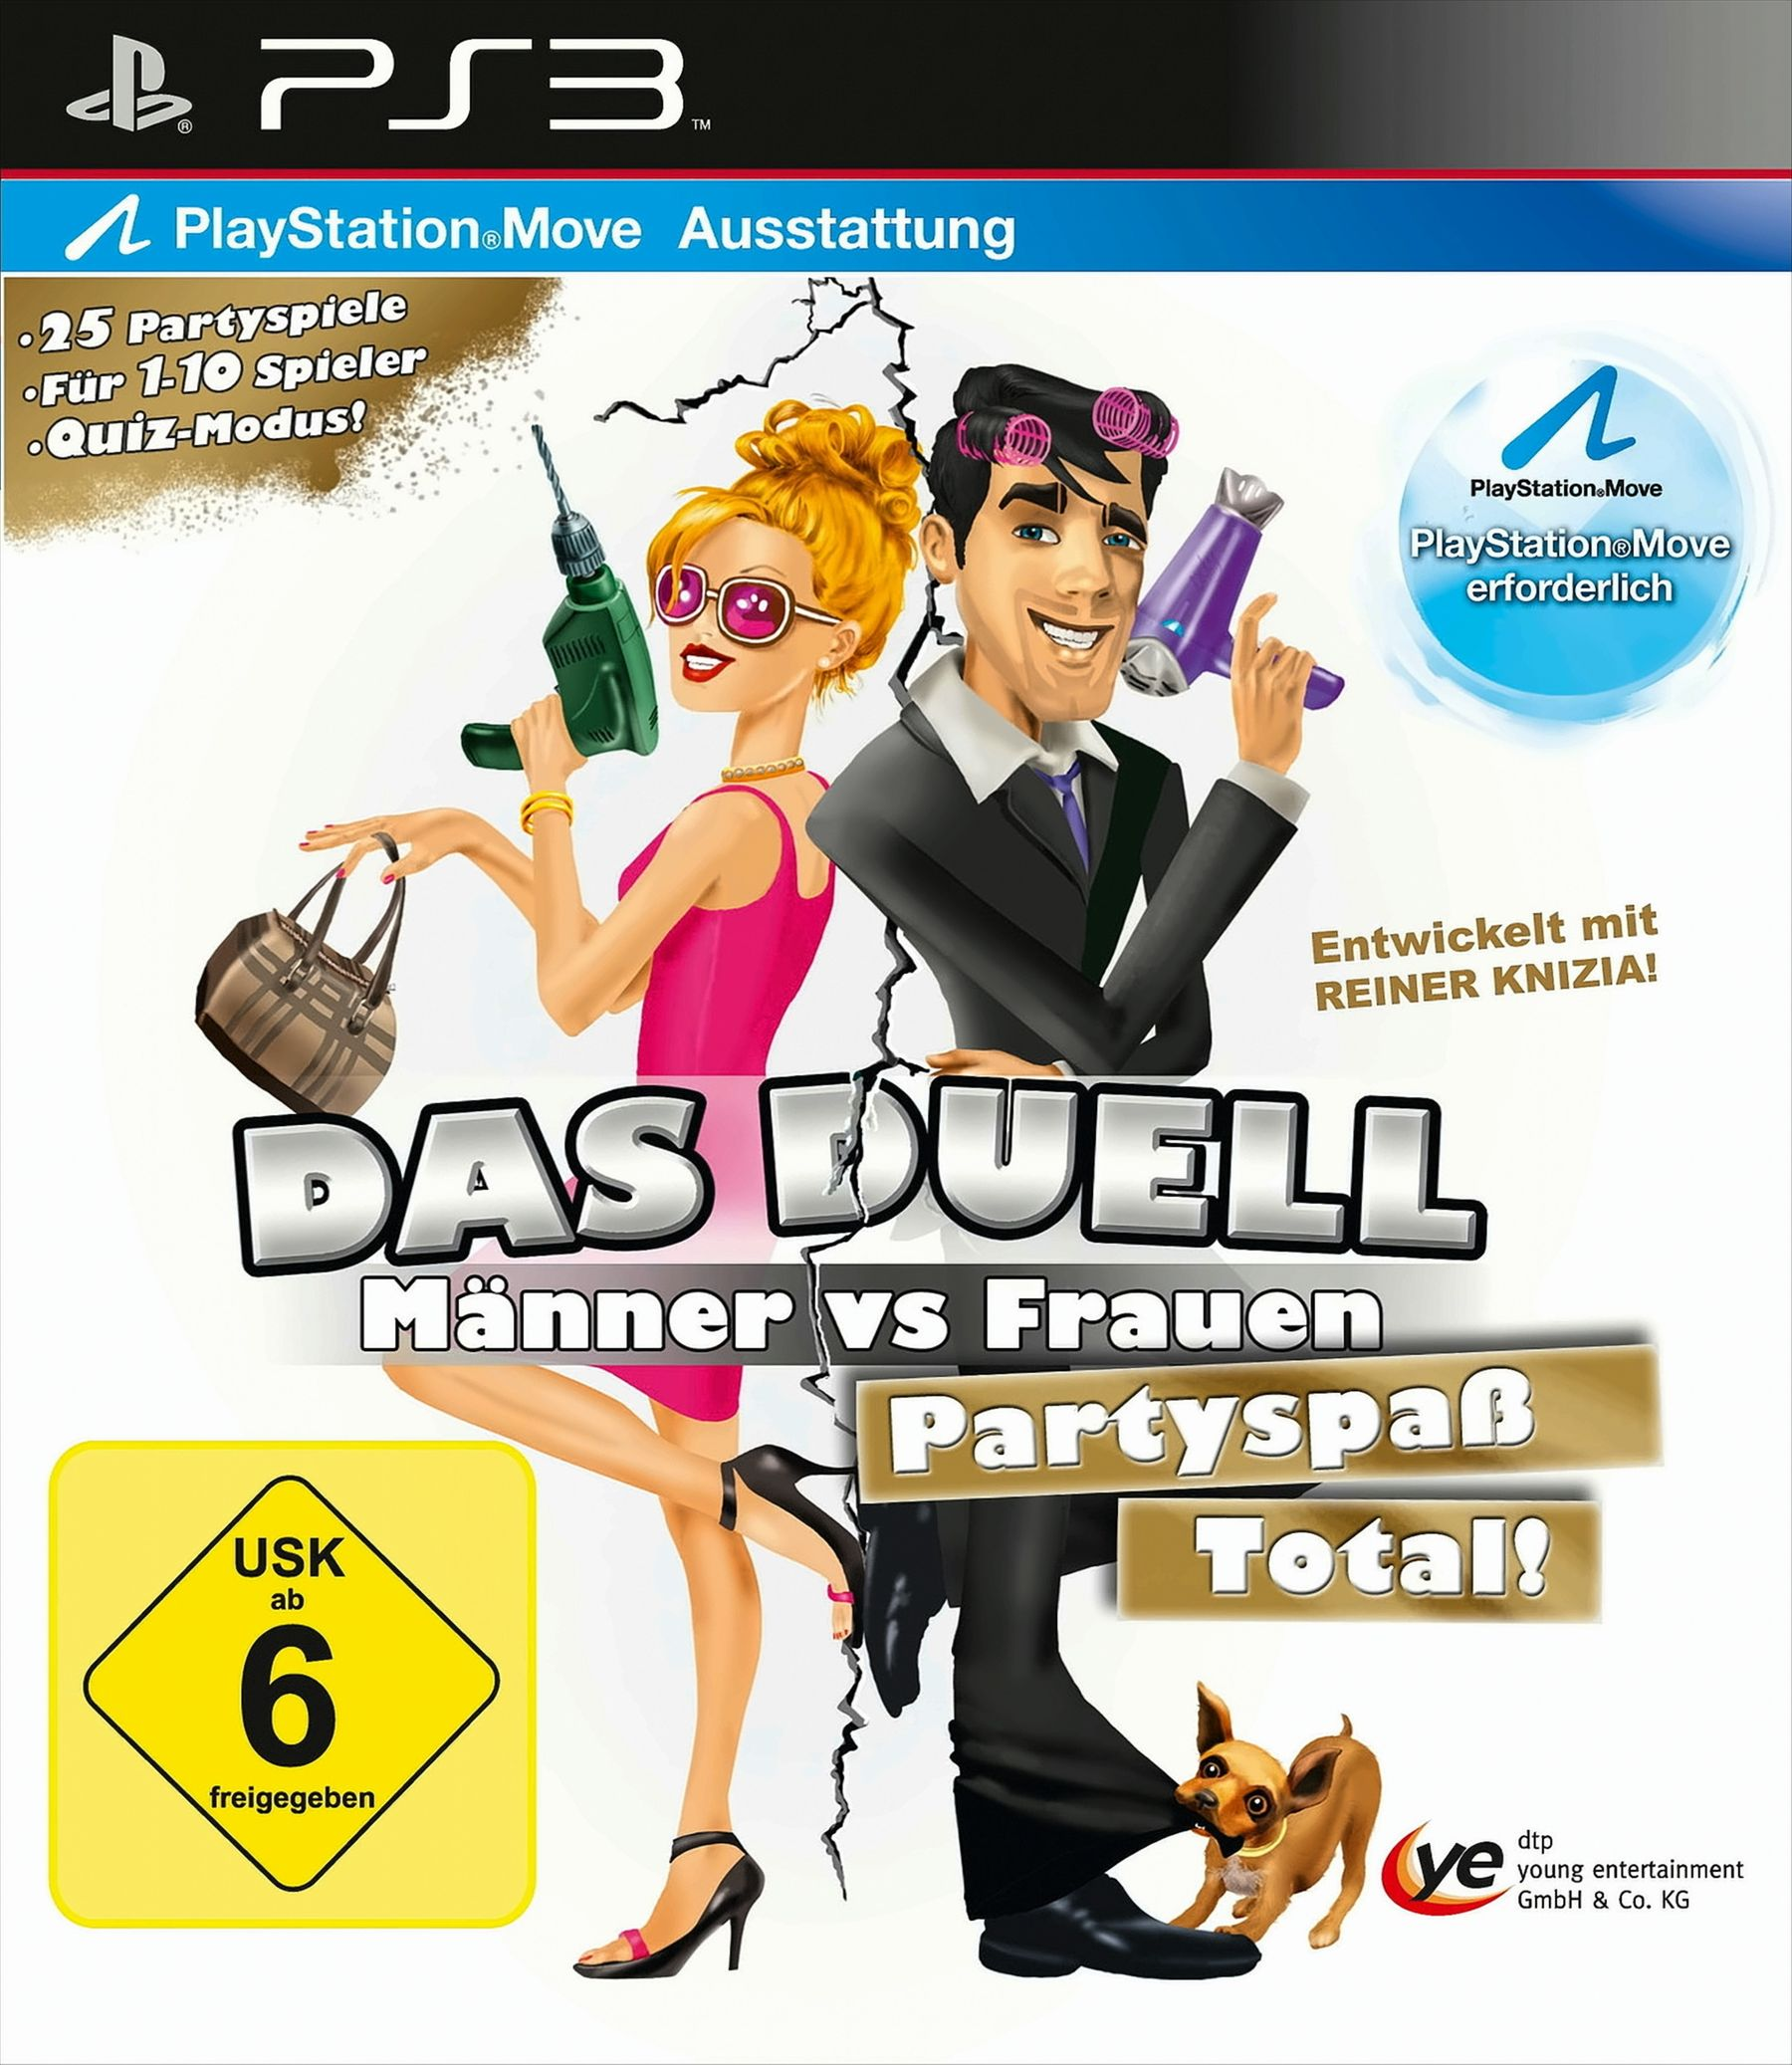 Duell: - Frauen 3] vs Männer [PlayStation Das